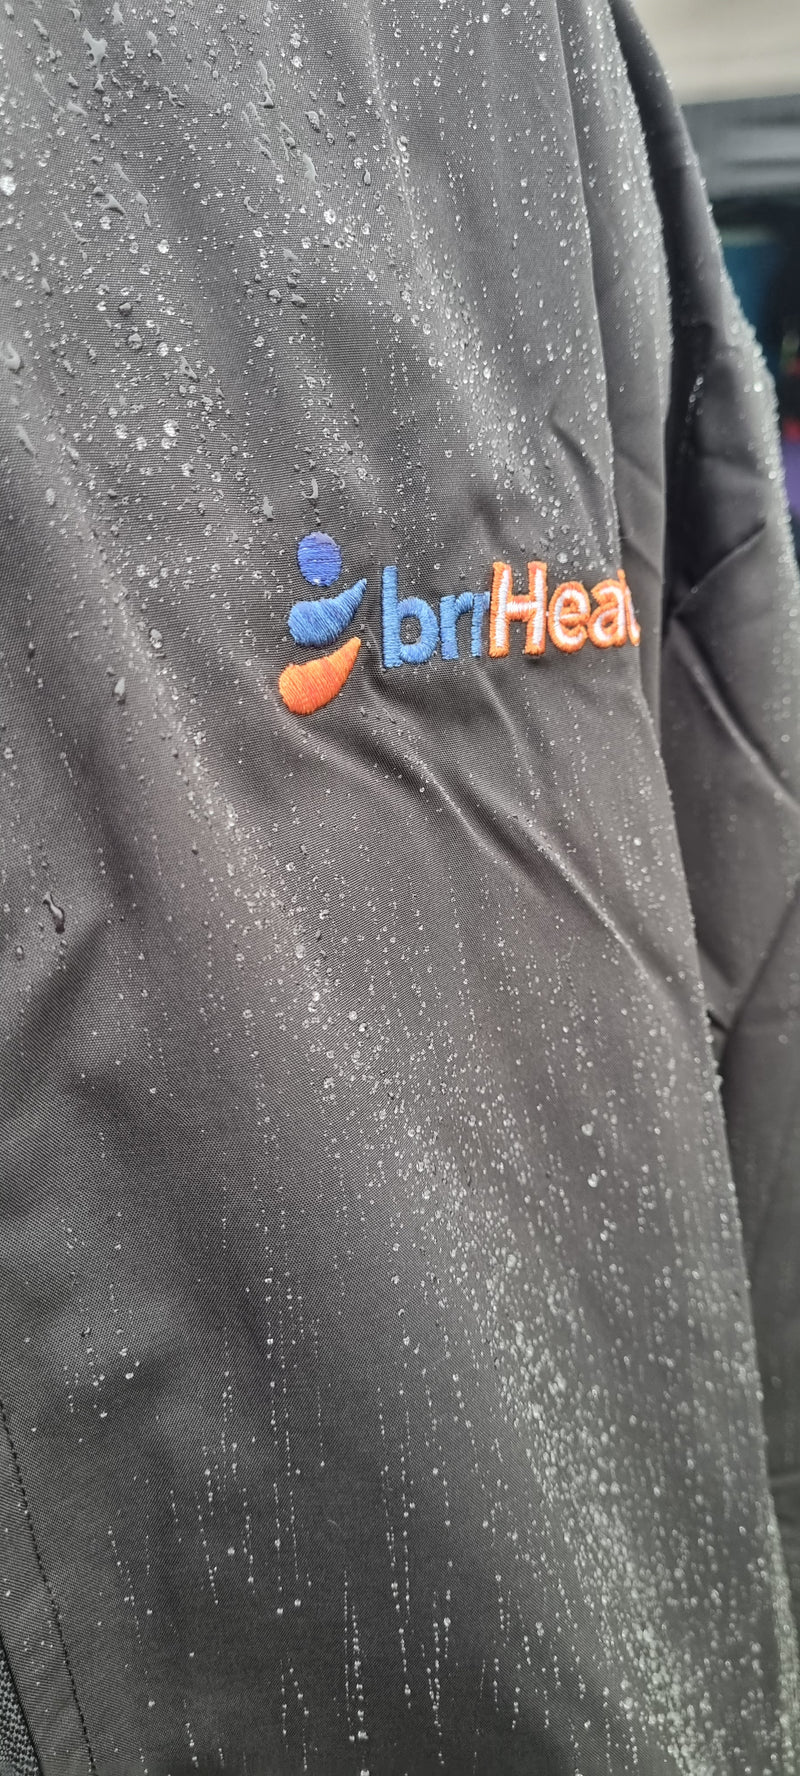 Personalised brrHeato Waterproof Changing Robe - Black